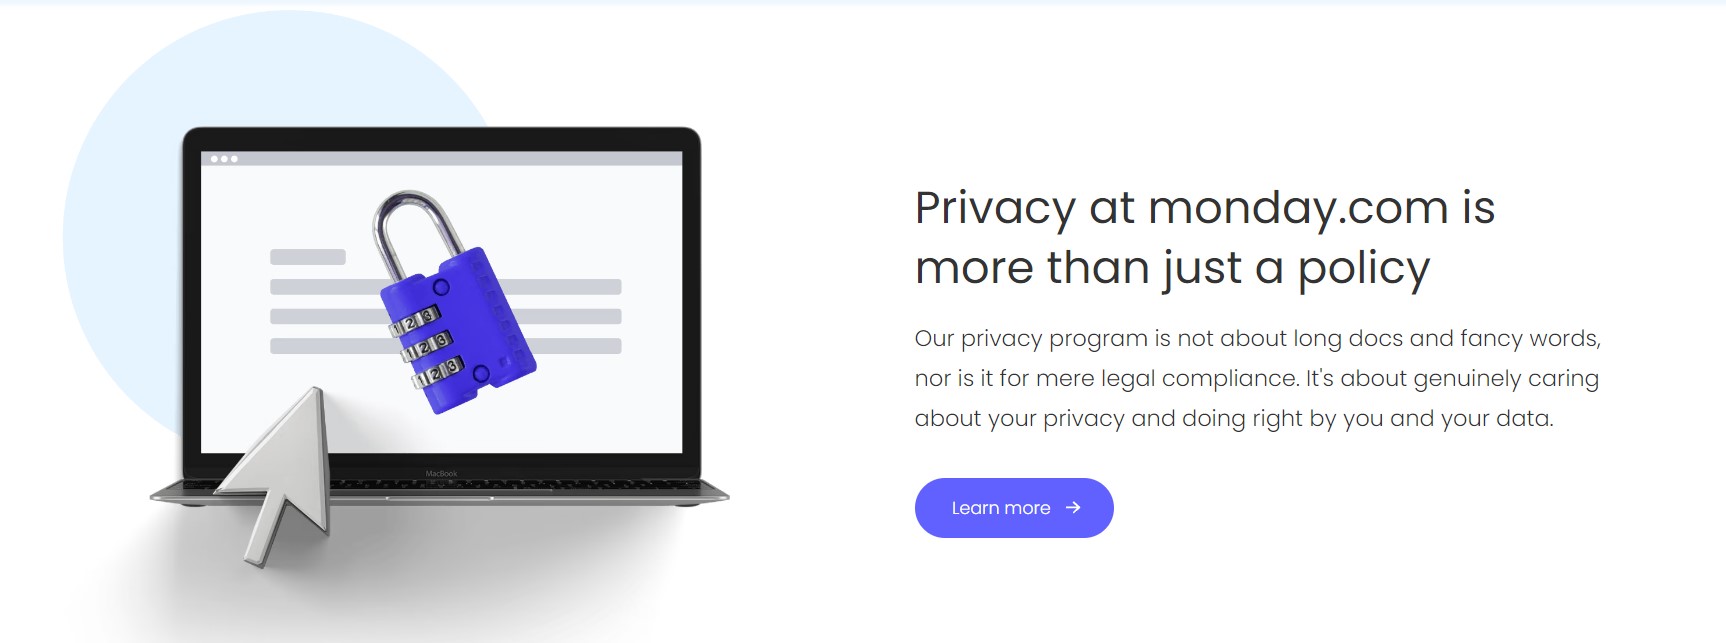 monday.com privacy